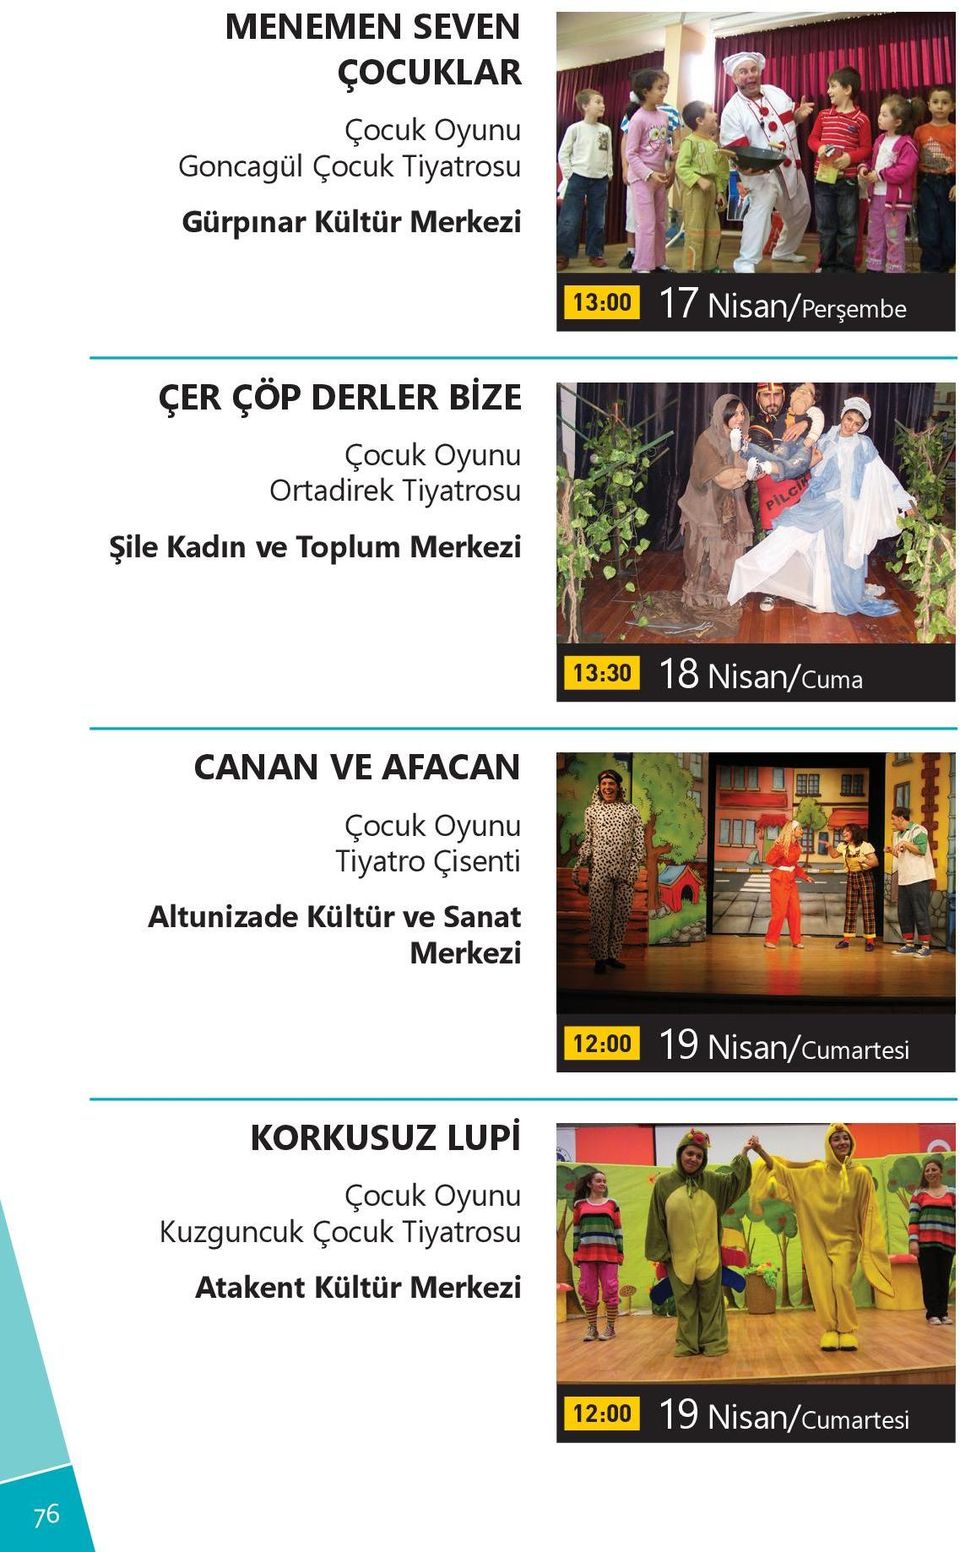 Merkezi 13:30 18 Nisan/Cuma CANAN VE AFACAN Tiyatro Çisenti Altunizade Kültür